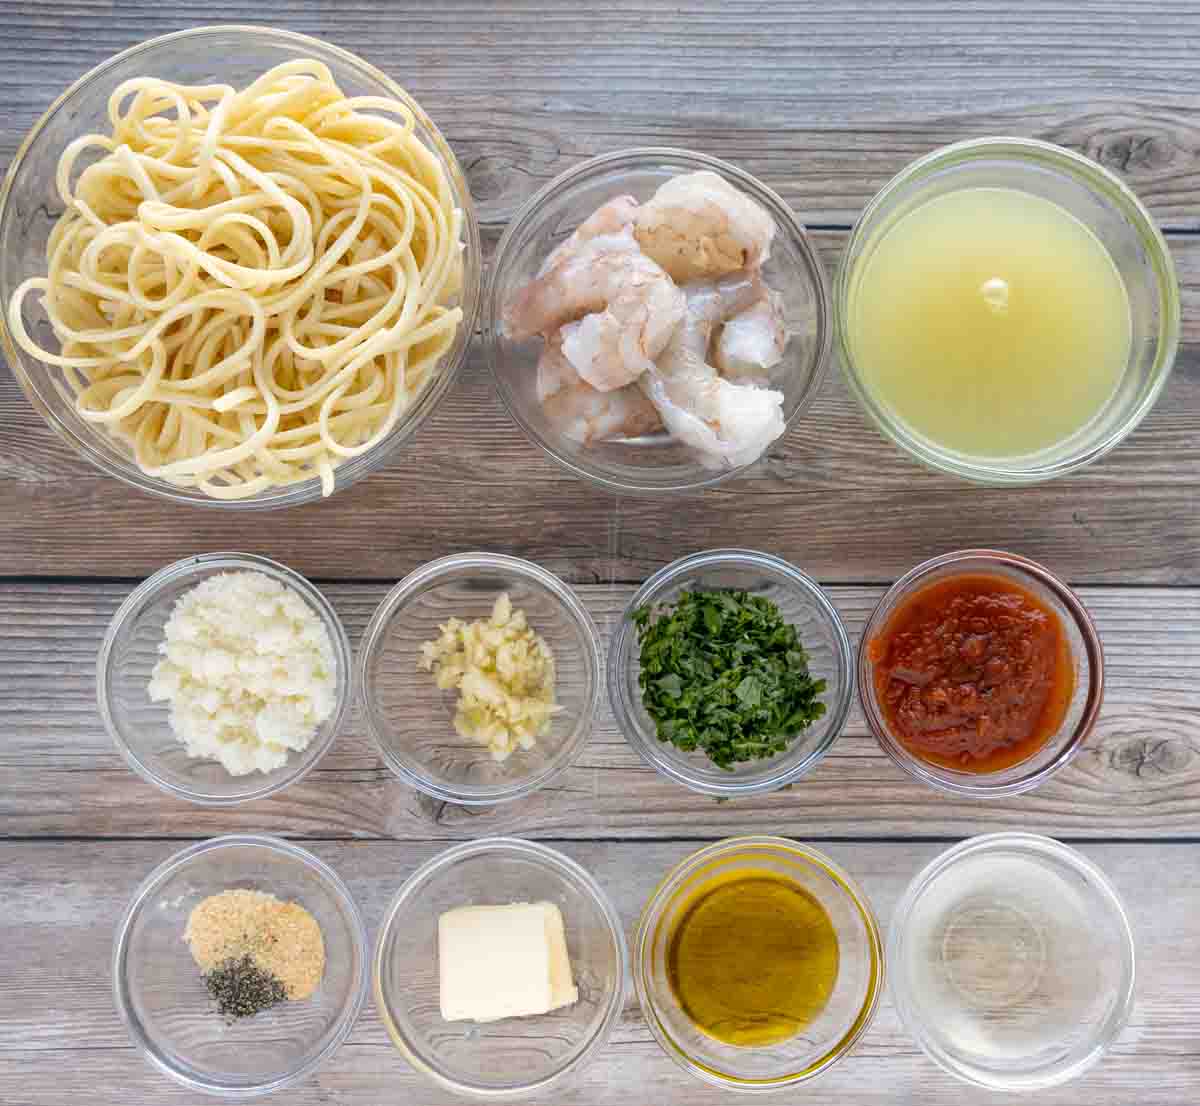 Ingredients to make shrimp scampi